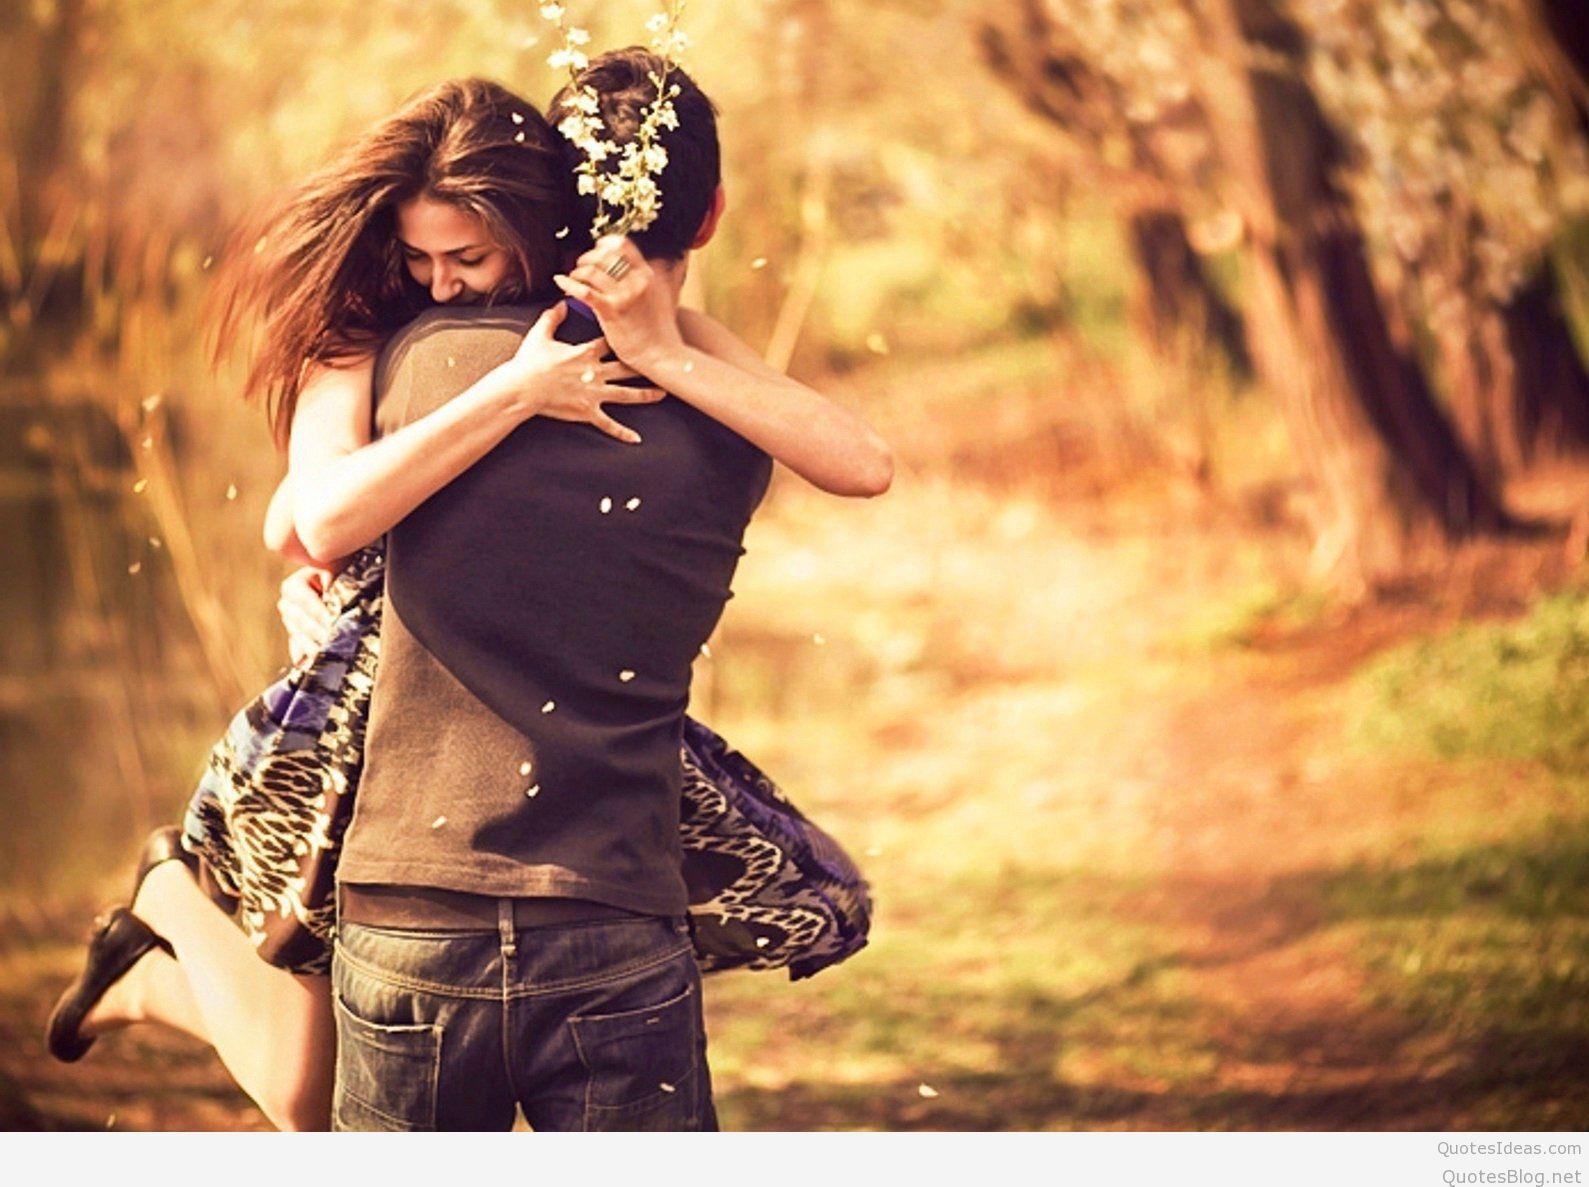 Boy and Girl Couple hug kiss love romantic pic Wallpapers Hd   Wallpapers13com